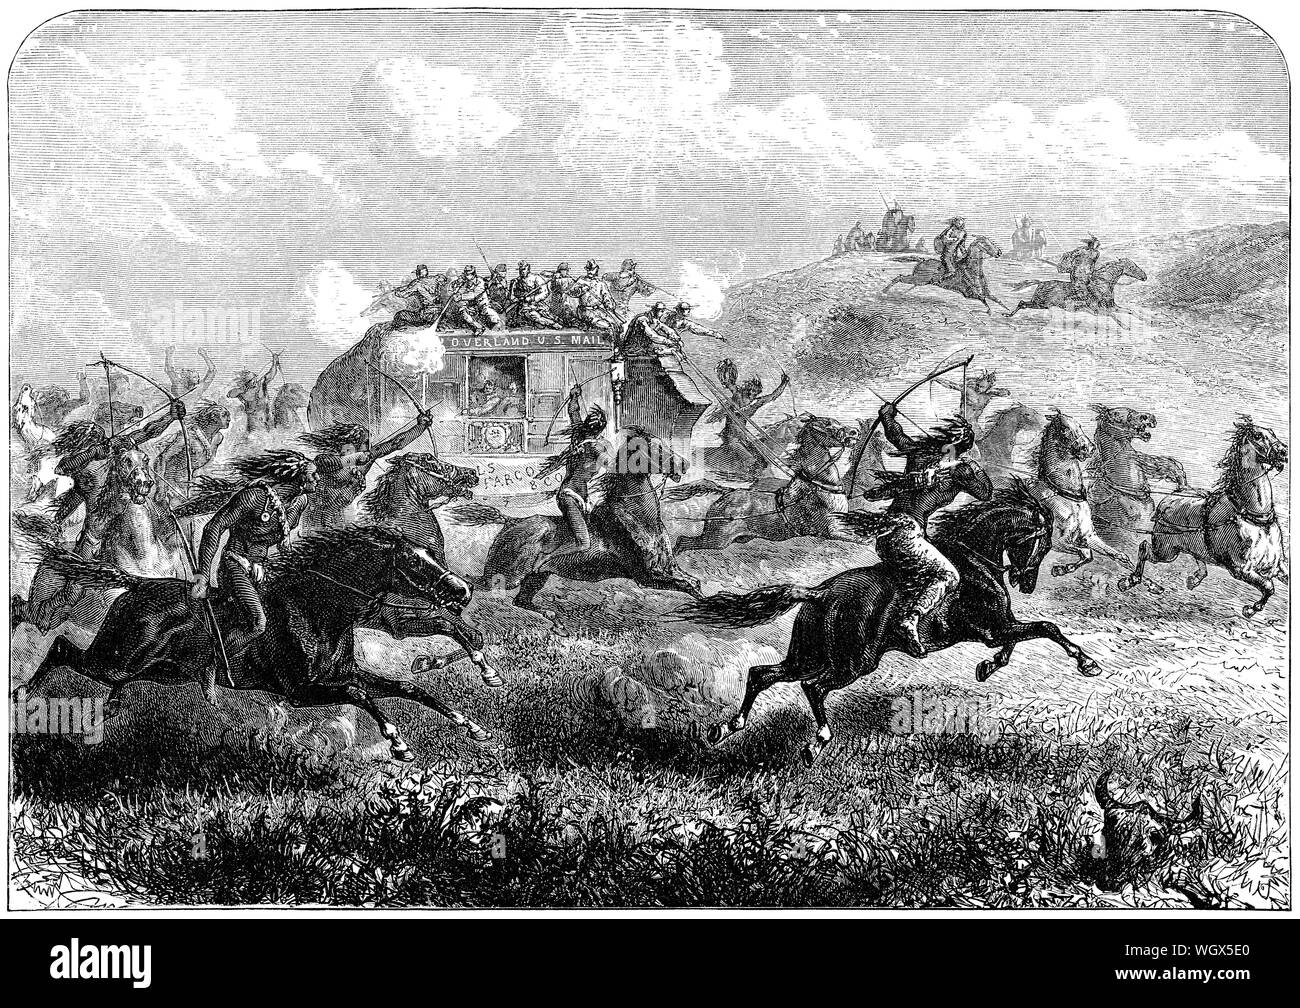 C 1876 Gravur einer United States Mail Stagecoach unter Beschuss von Native Americans während der Prairie Crossing. Stockfoto